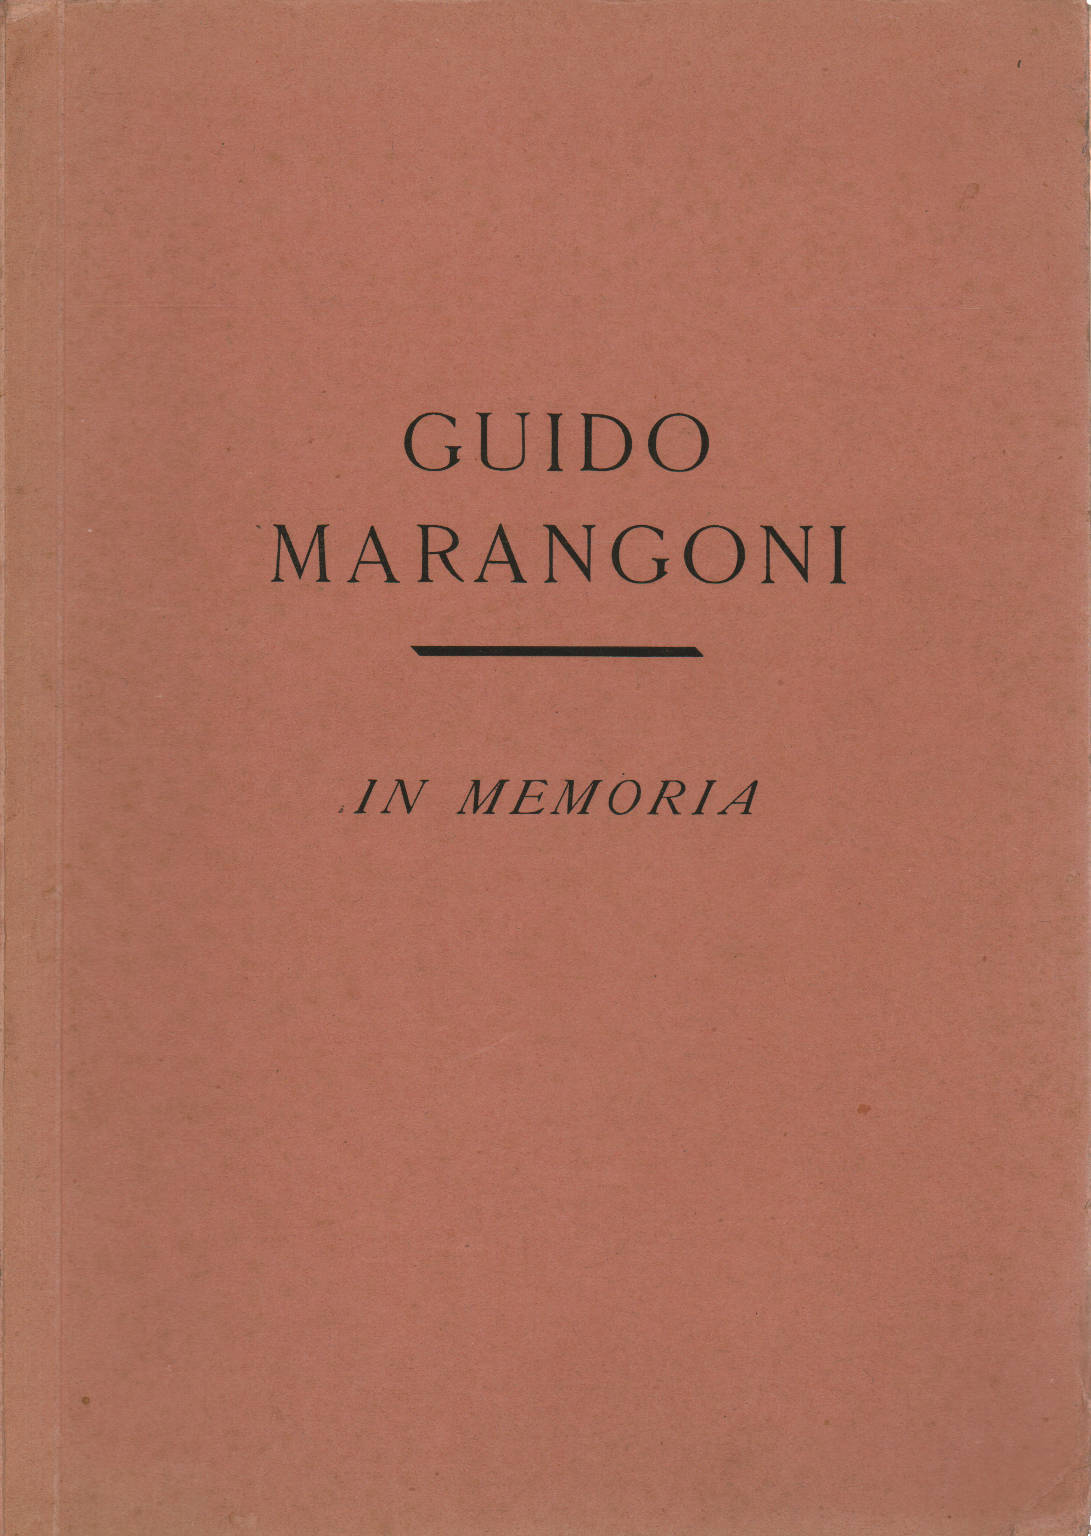 In memoria, Guido Marangoni